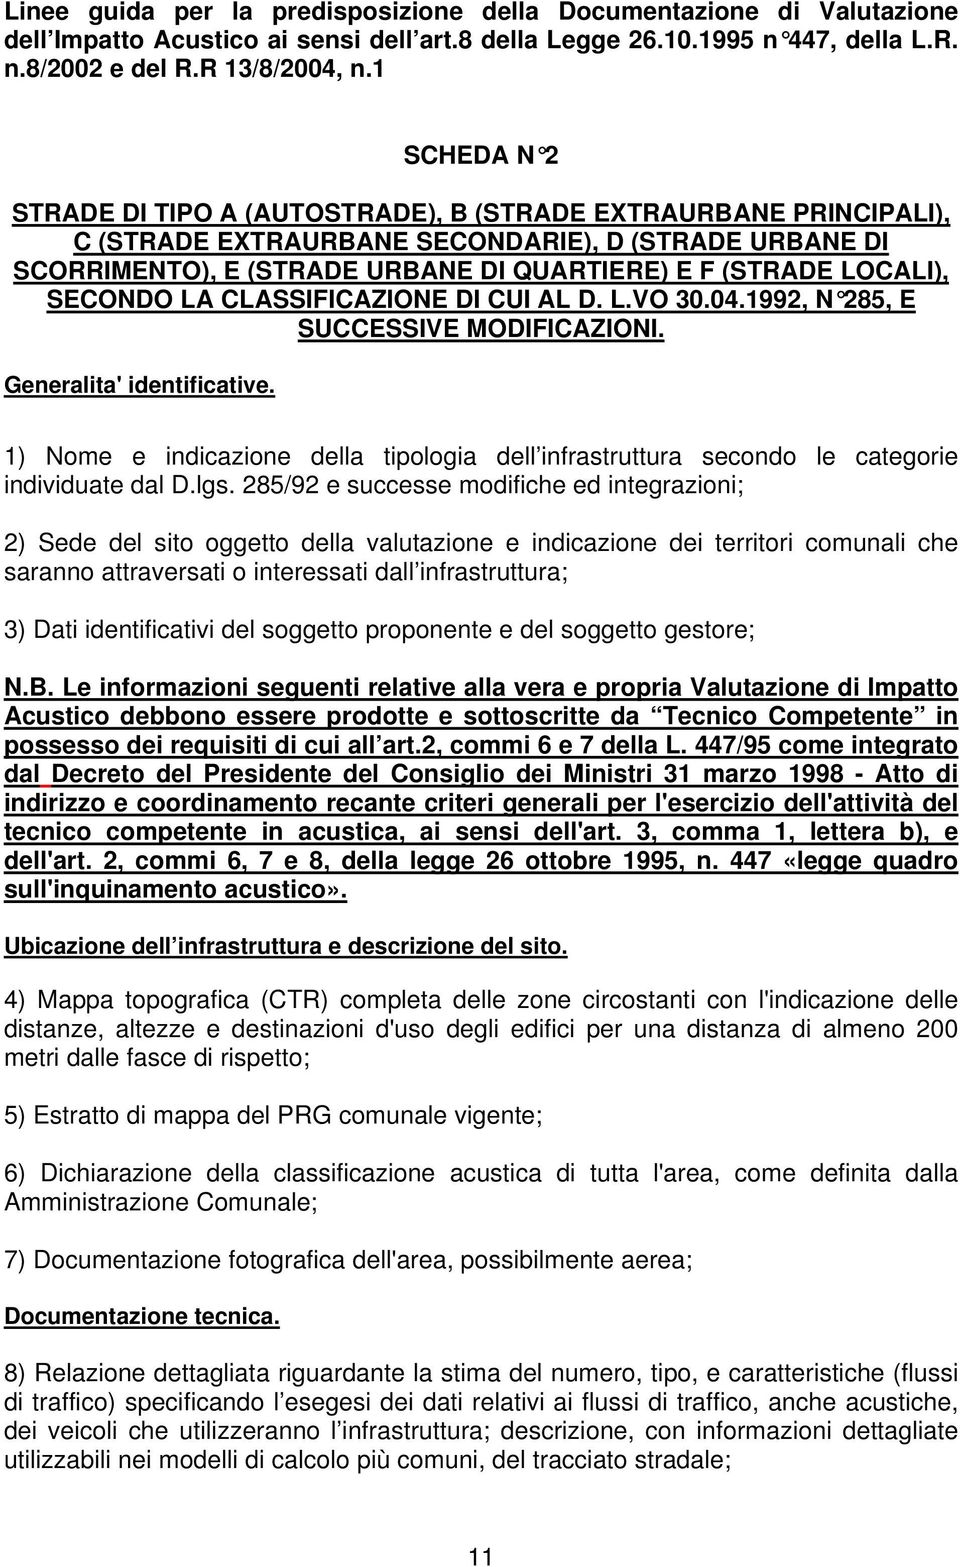 SECONDO LA CLASFICAZIONE DI CUI AL D. L.VO 30.04.1992, N 285, E SUCCESVE MODIFICAZIONI. Generalita' identificative.